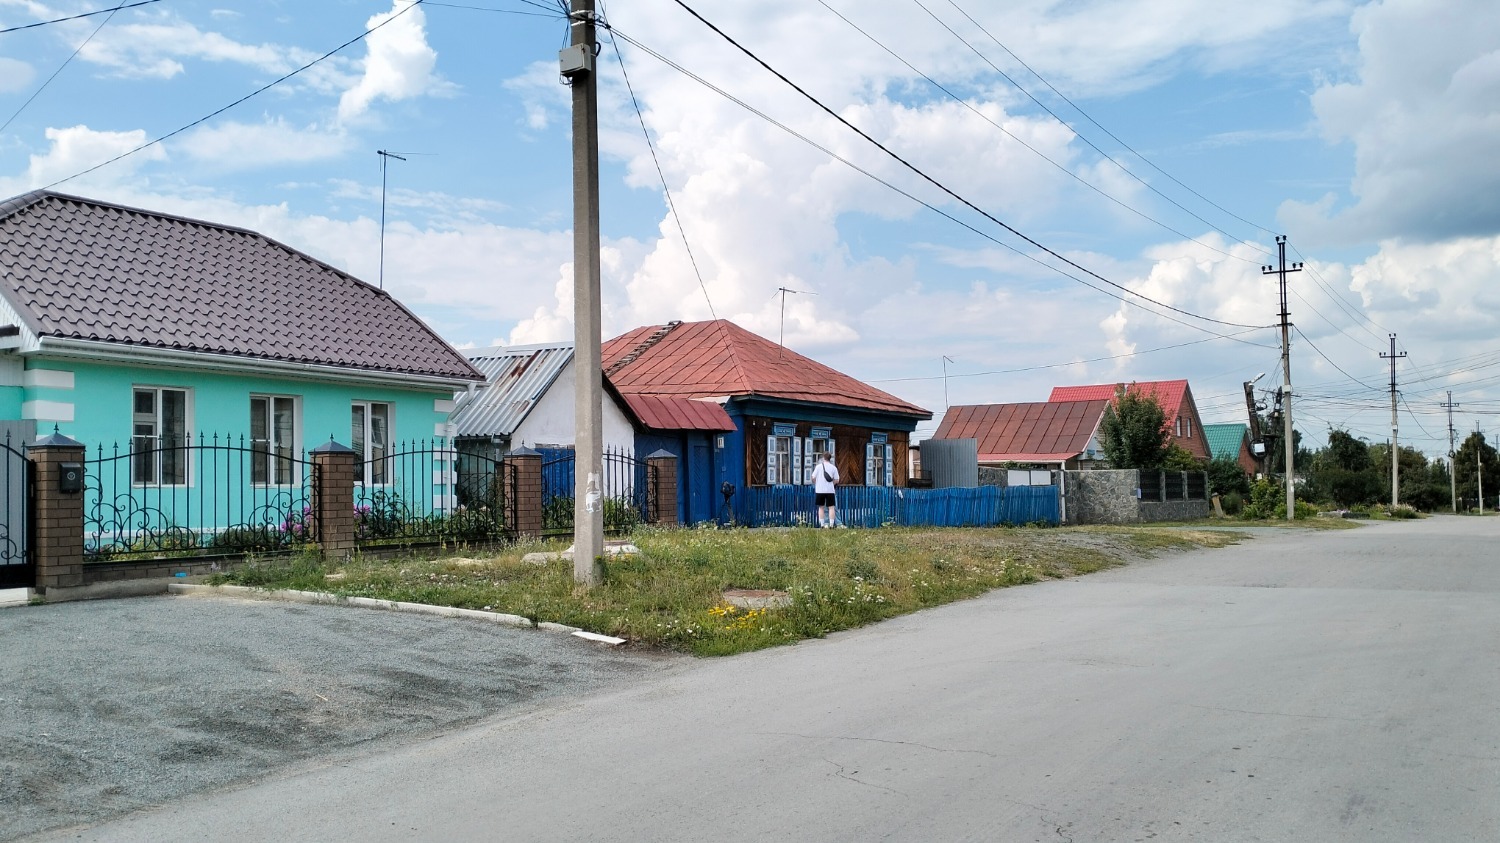 Дом семьи Ческидовых выглядит явно беднее домов соседей